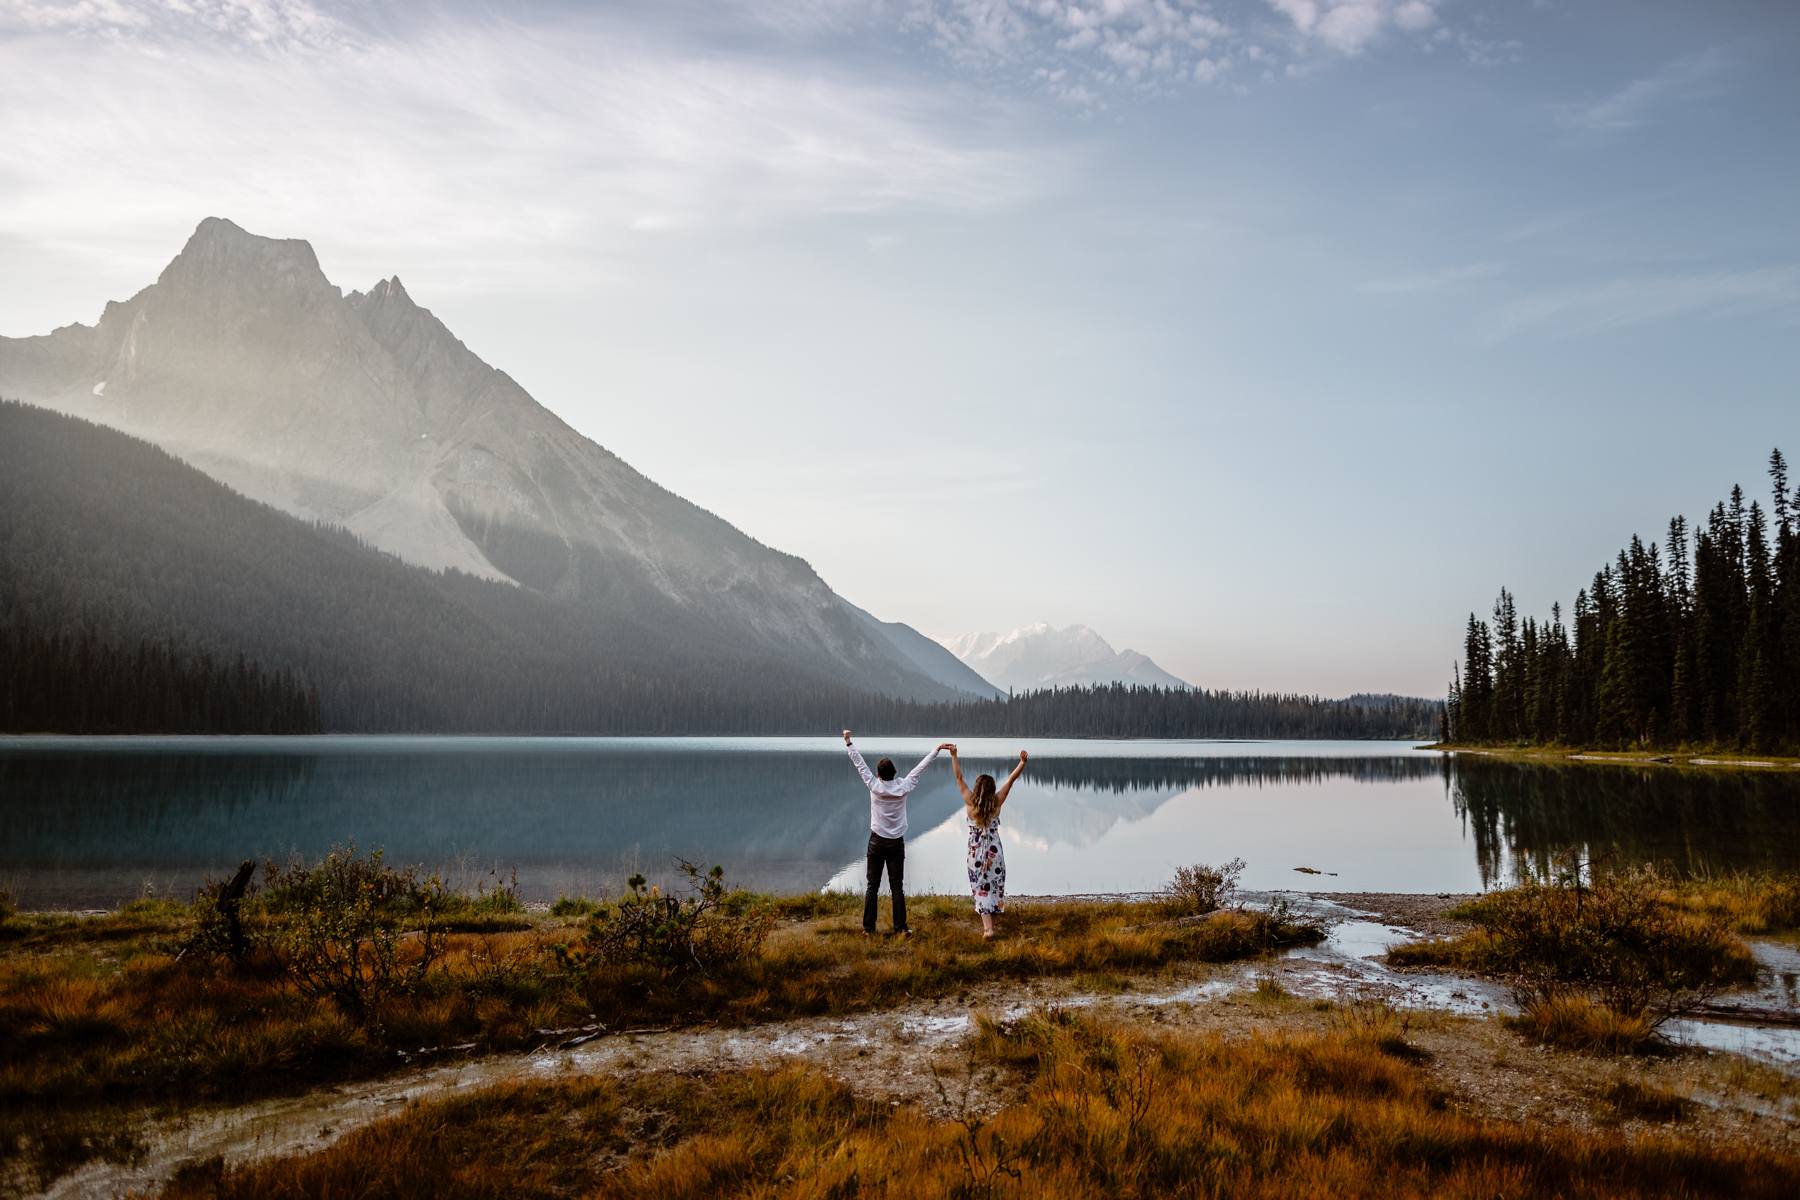 Emerald Lake Wedding Photographers - Image 27